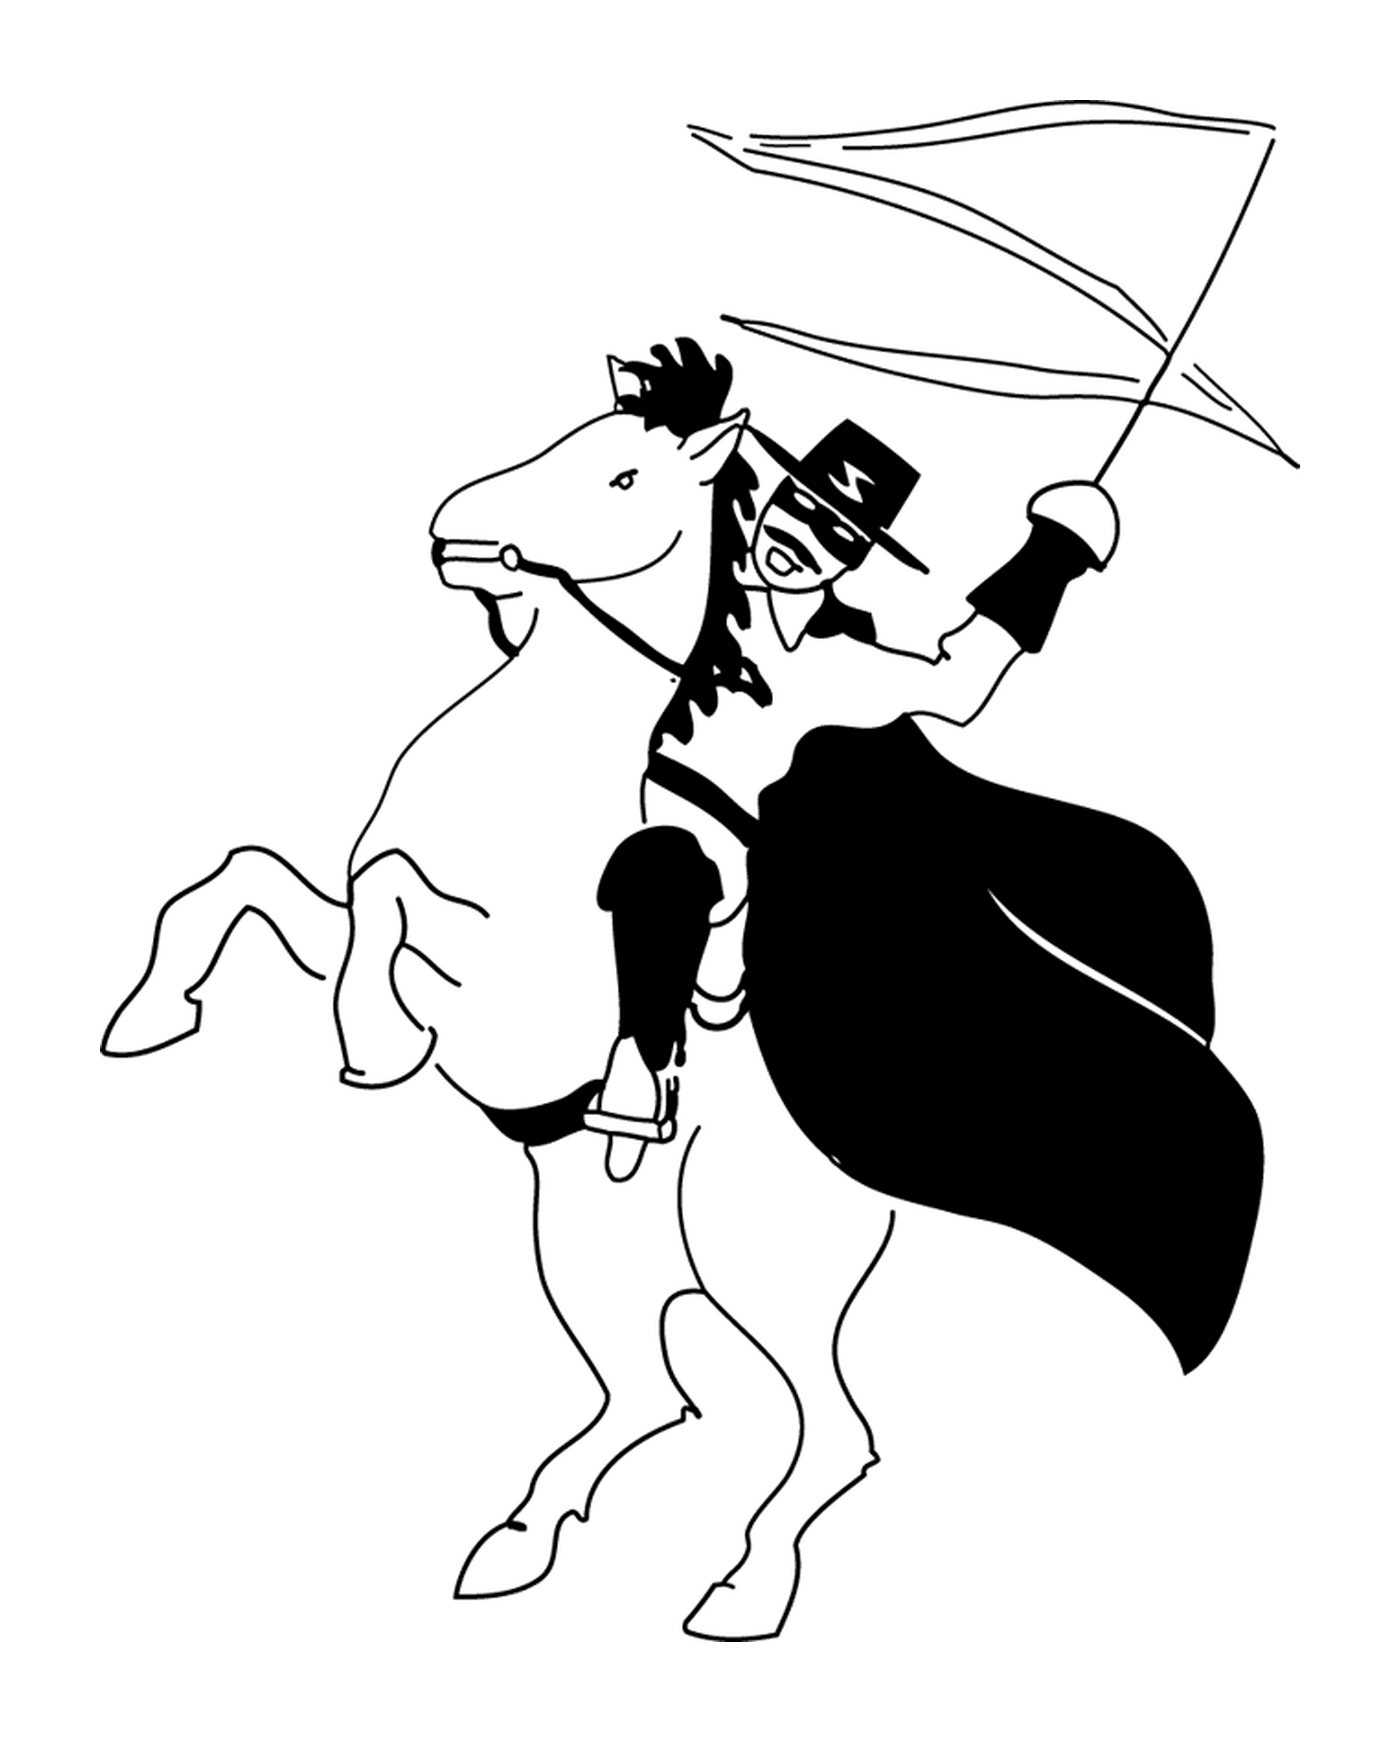  Zorro auf seinem Pferd Tornado 